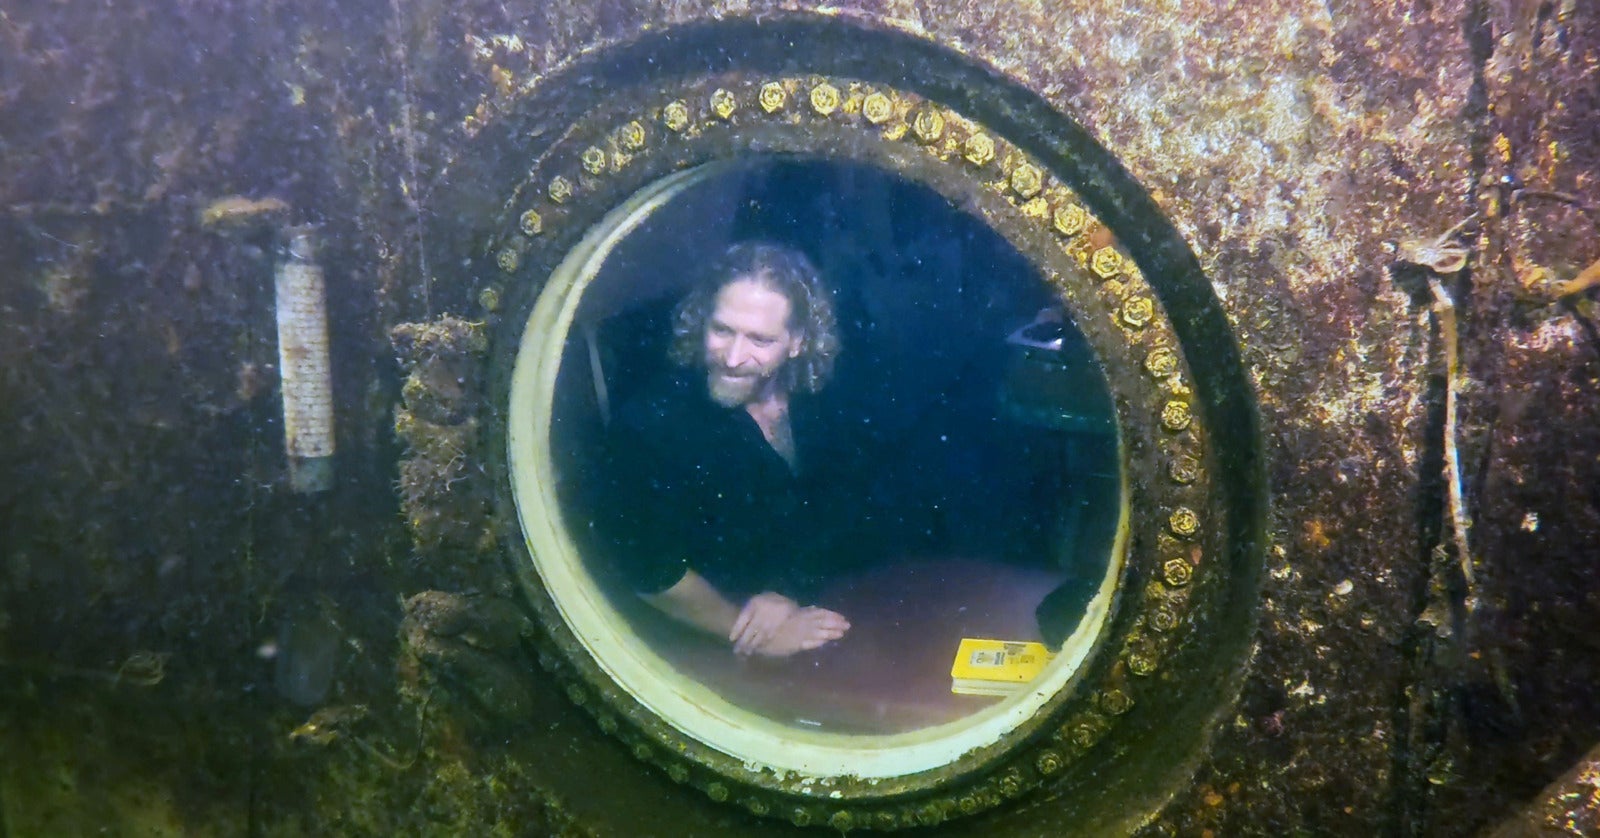 Dr. Deep Sea นักวิจัยชาวอเมริกัน ฟลอริดา ทำลายสถิติ อยู่ใต้น้ำทะเลนาน 100 วัน